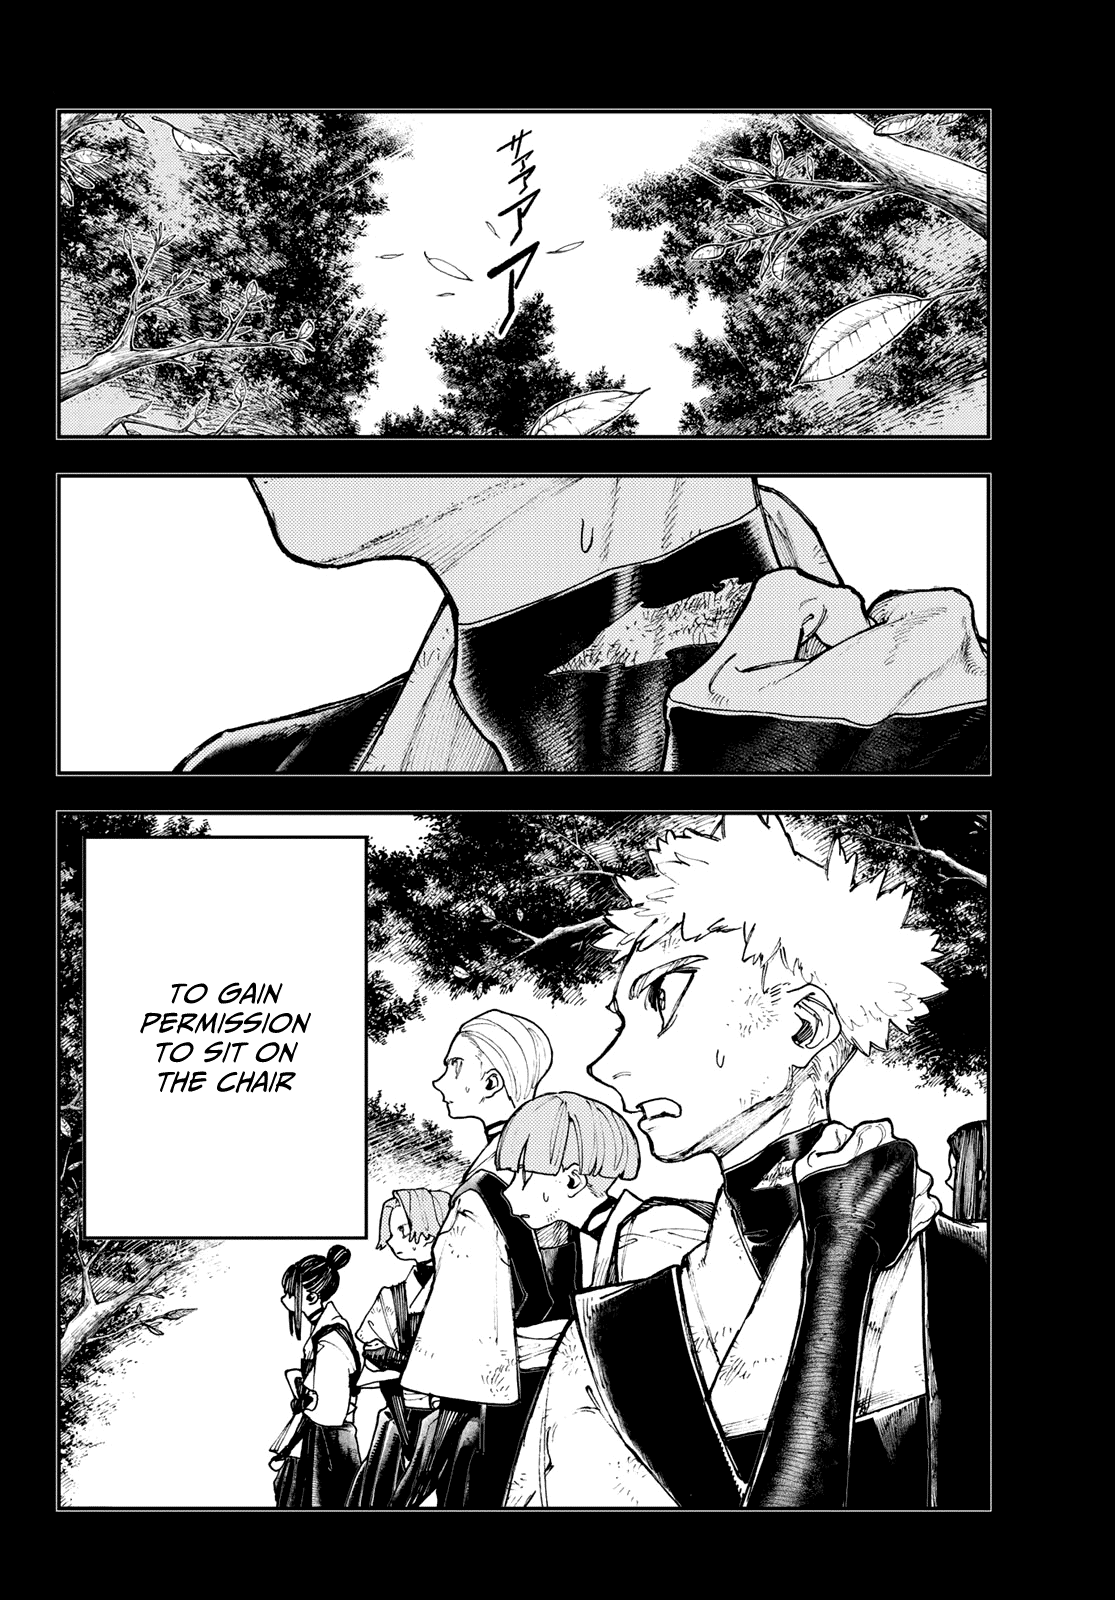 Gachiakuta - Page 2